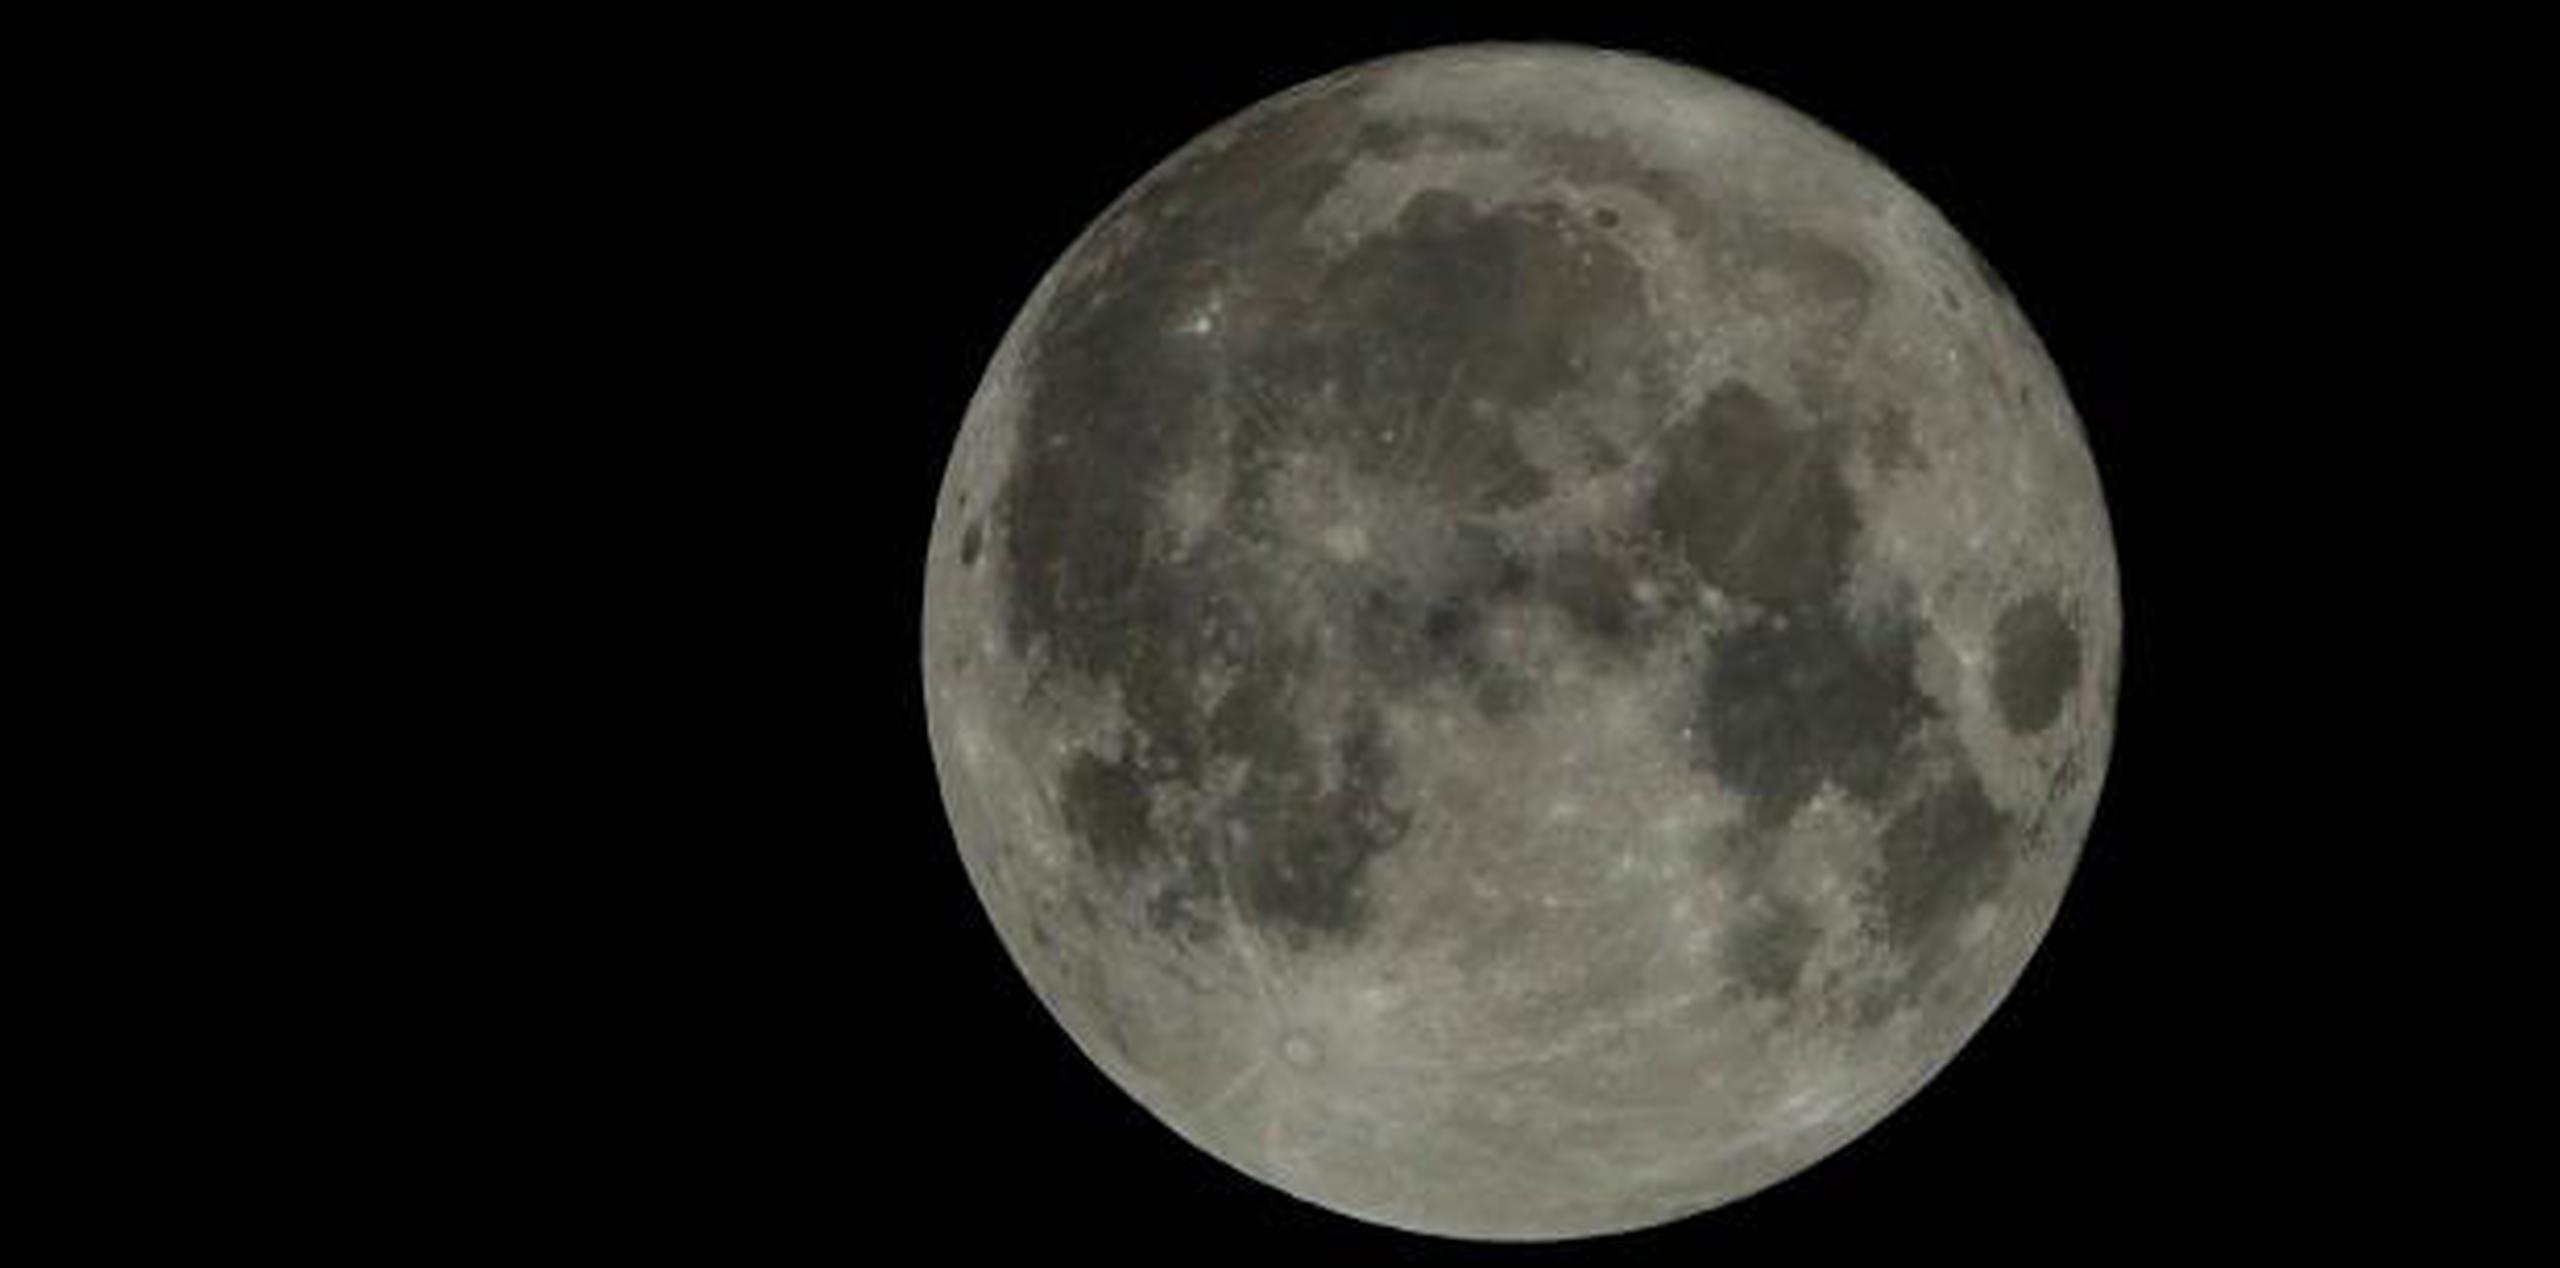 Kenneth Bowersox reconoció que el viaje a la Luna supone muchos riesgos. (AP / Charlie Riedel)